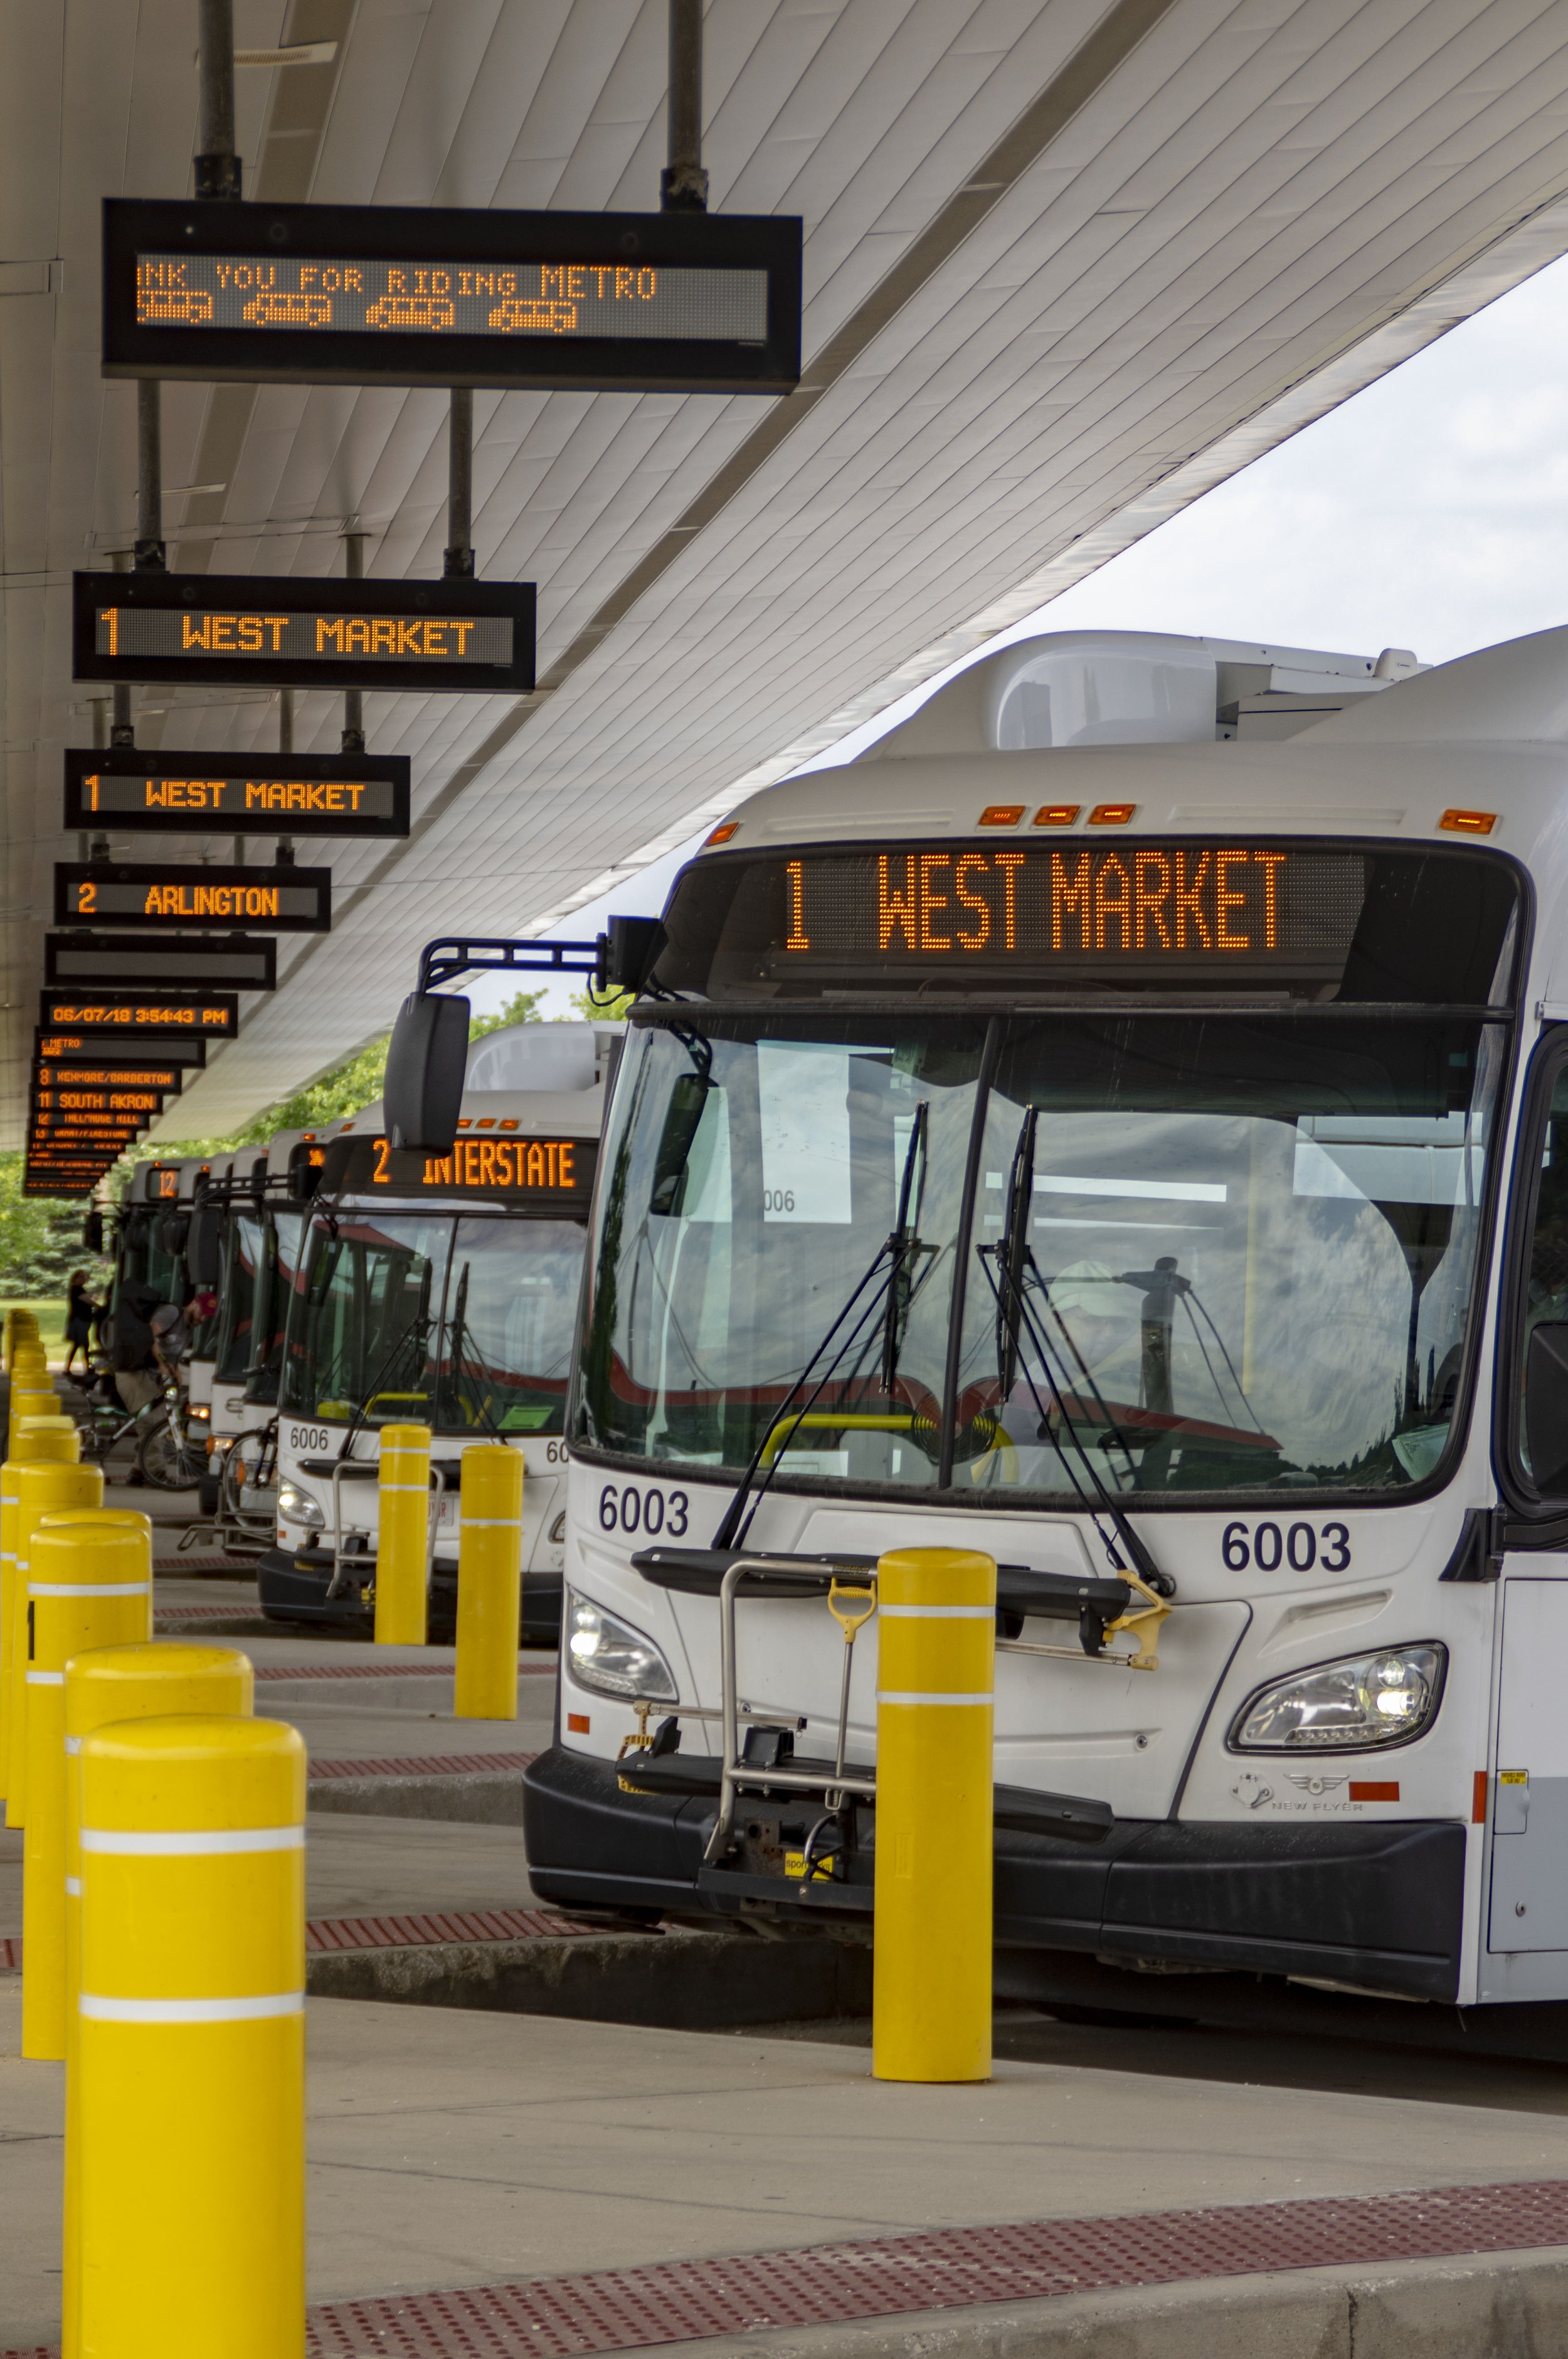 Buses at Robert K Pfaff Transit Center METRO.jpg